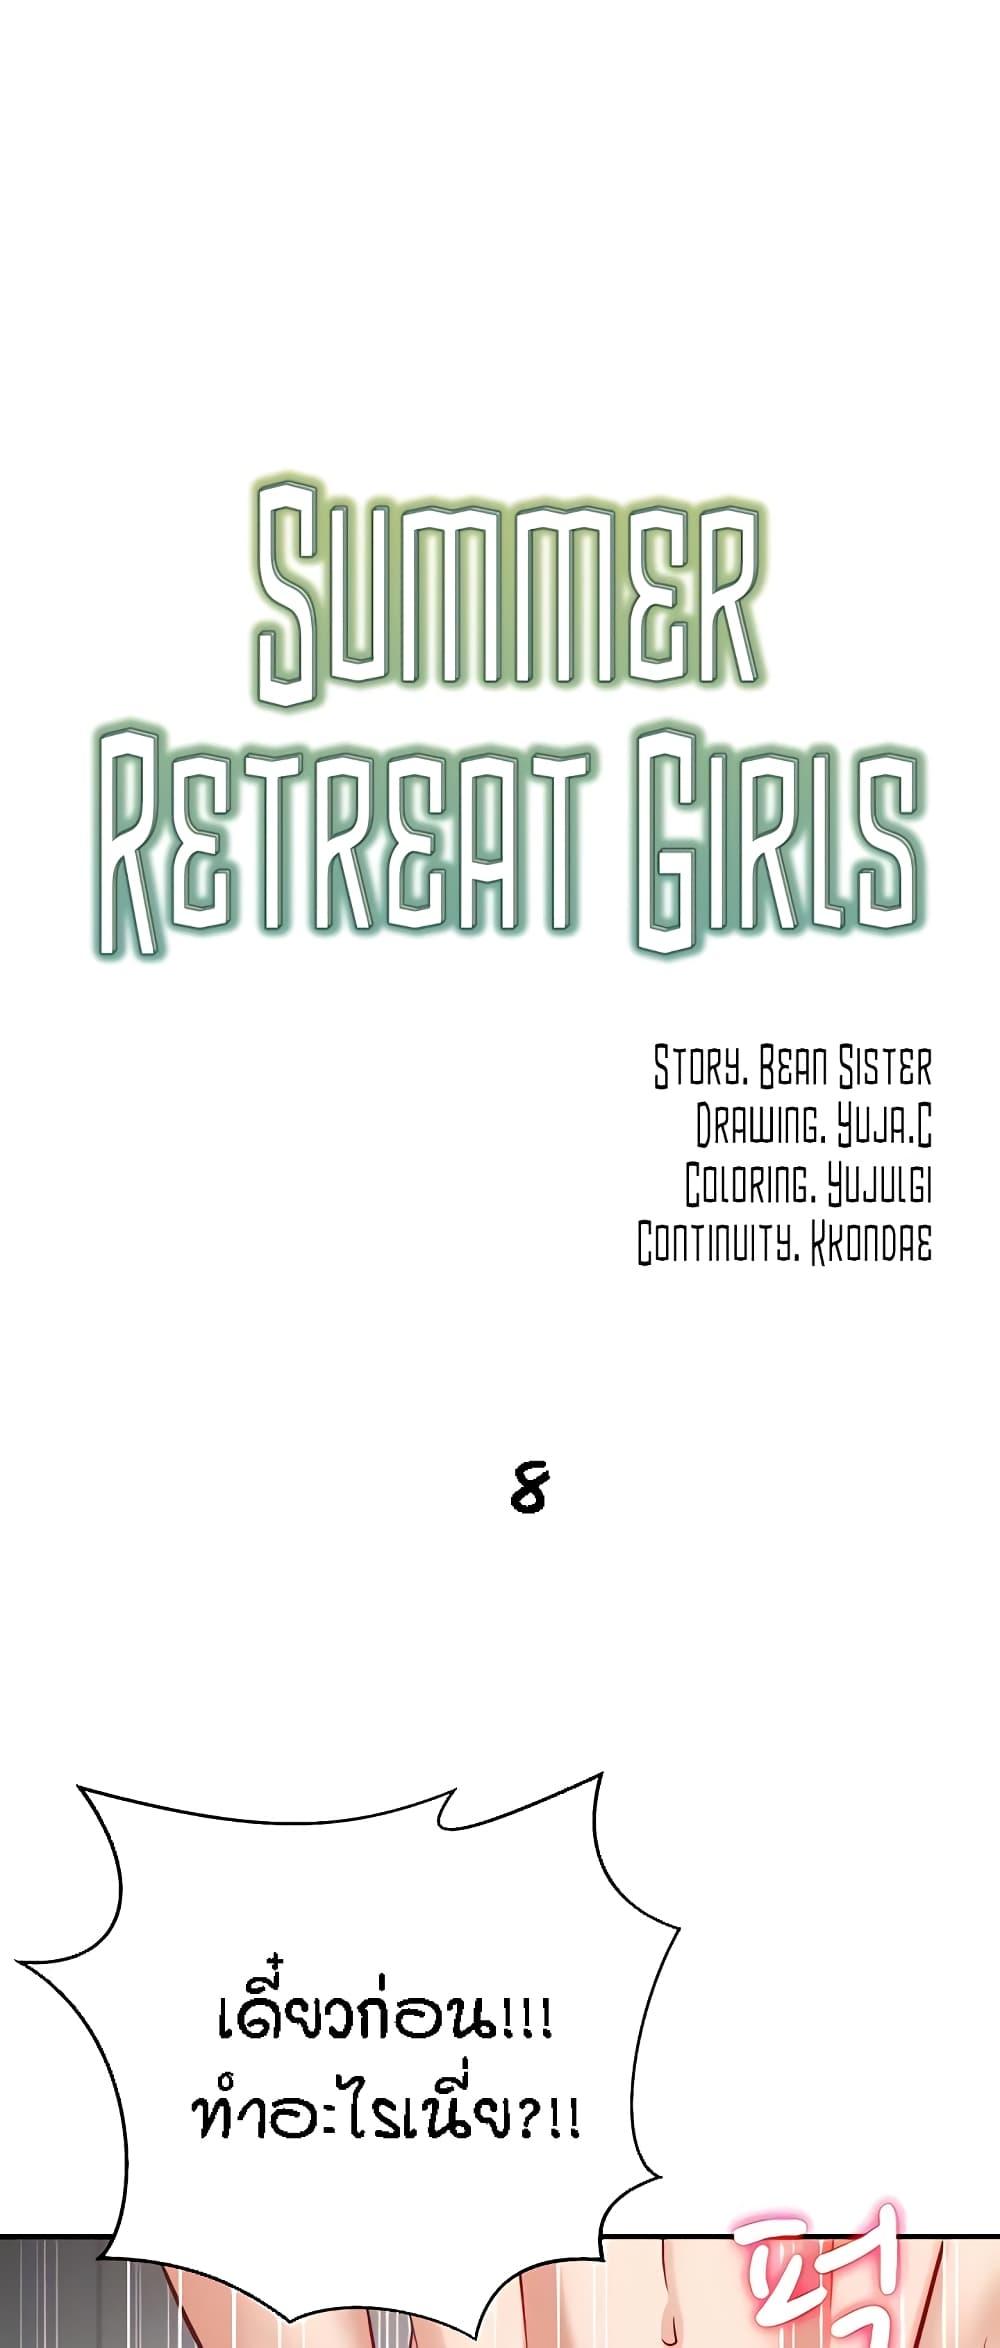 Summer Retreat Girls 8 01